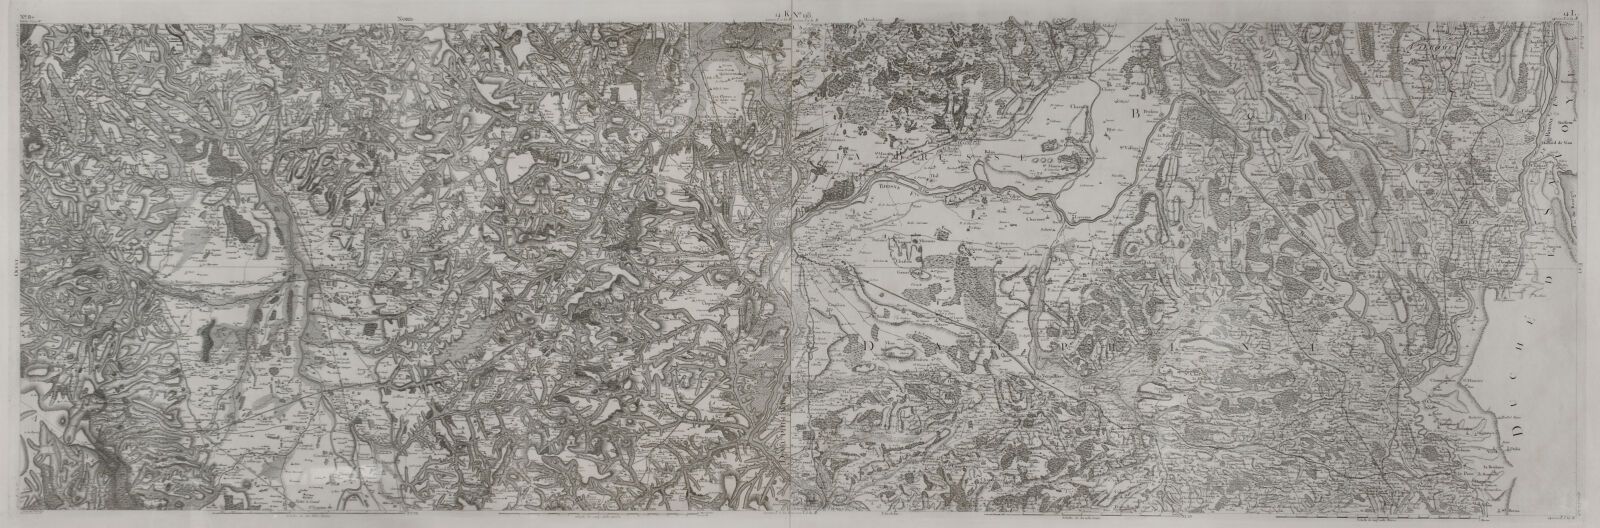 Null 里昂的地图学

里昂及其地区的纪念性地图，18世纪末。

铜版画。

床单外观：高65厘米-长184厘米